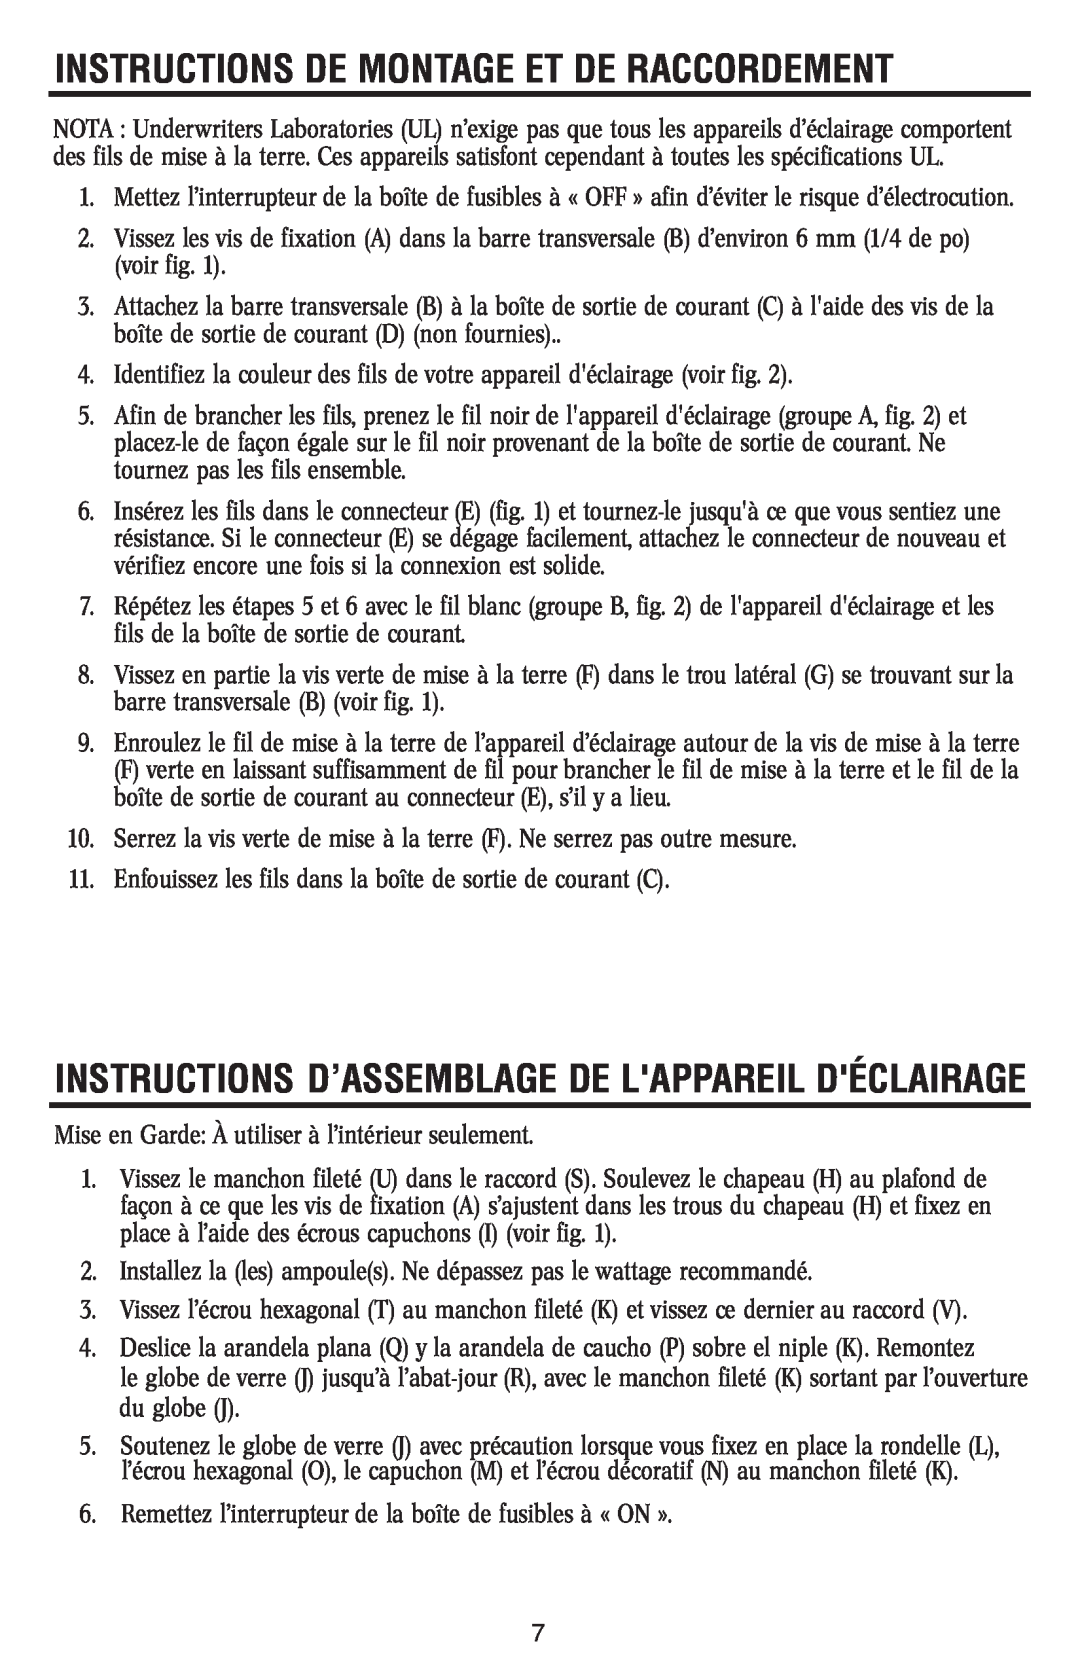 Westinghouse W-367 Instructions D’Assemblage De Lappareil Déclairage, Instructions De Montage Et De Raccordement 